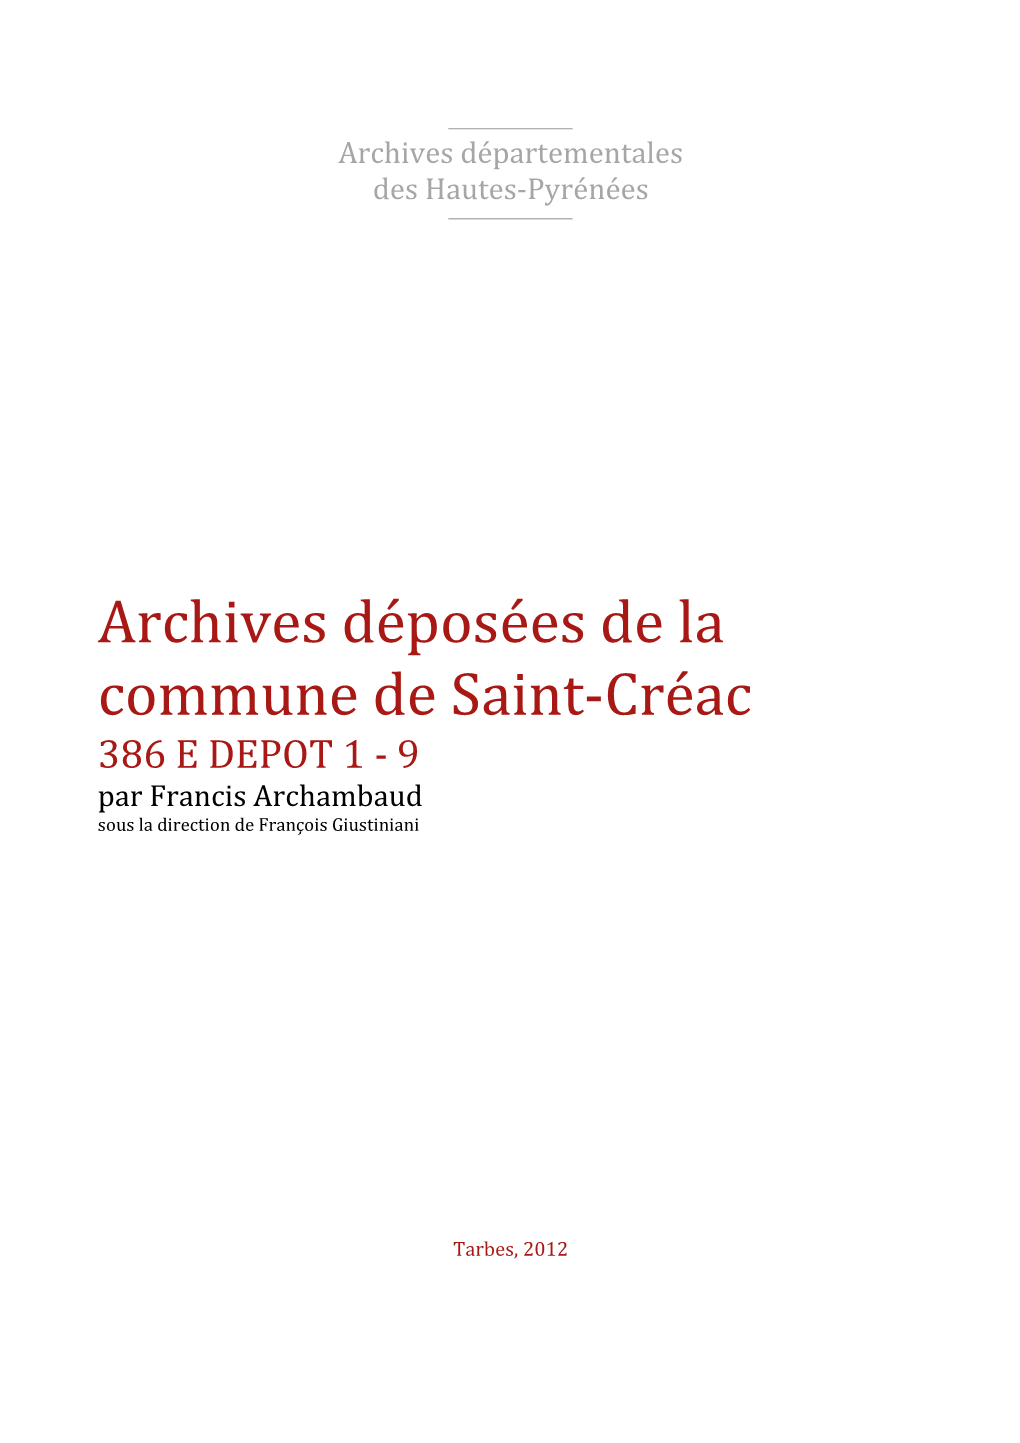 Archives Déposées De La Commune De Saint-Créac 386 E DEPOT 1 - 9 Par Francis Archambaud Sous La Direction De François Giustiniani